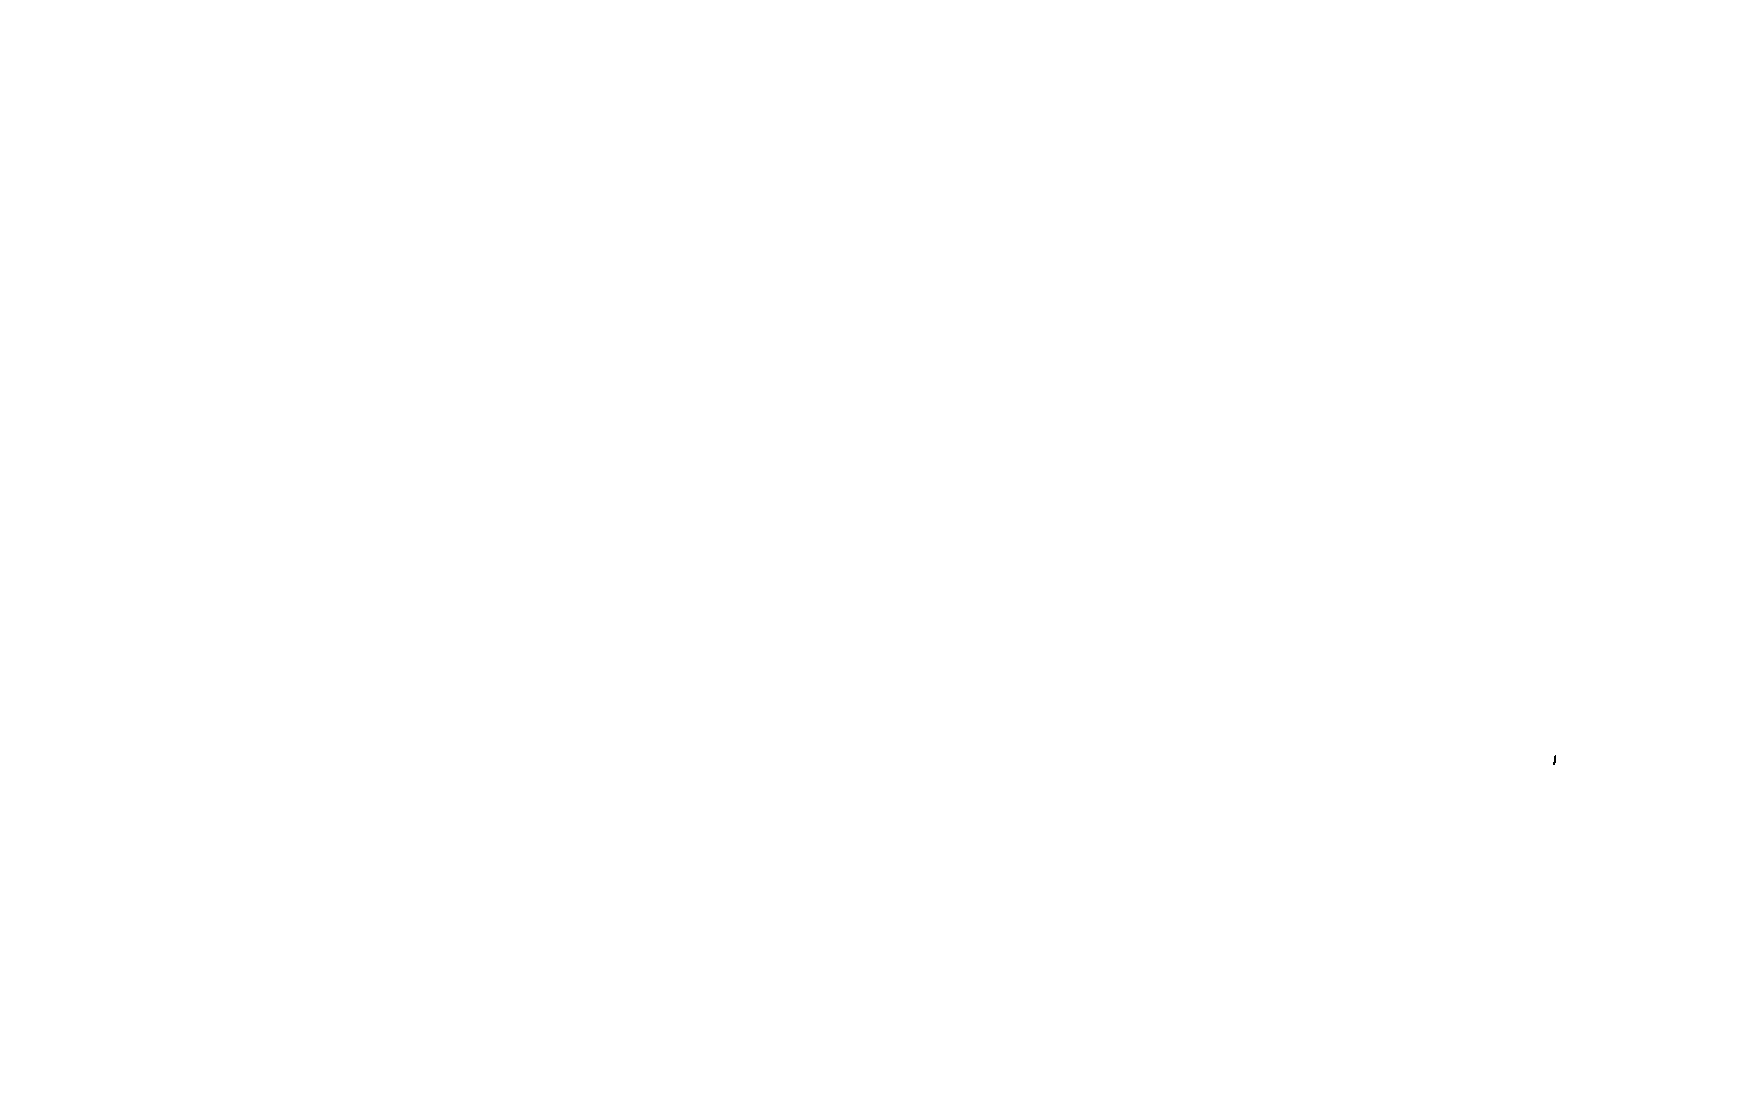 Traveling Lemur Productions